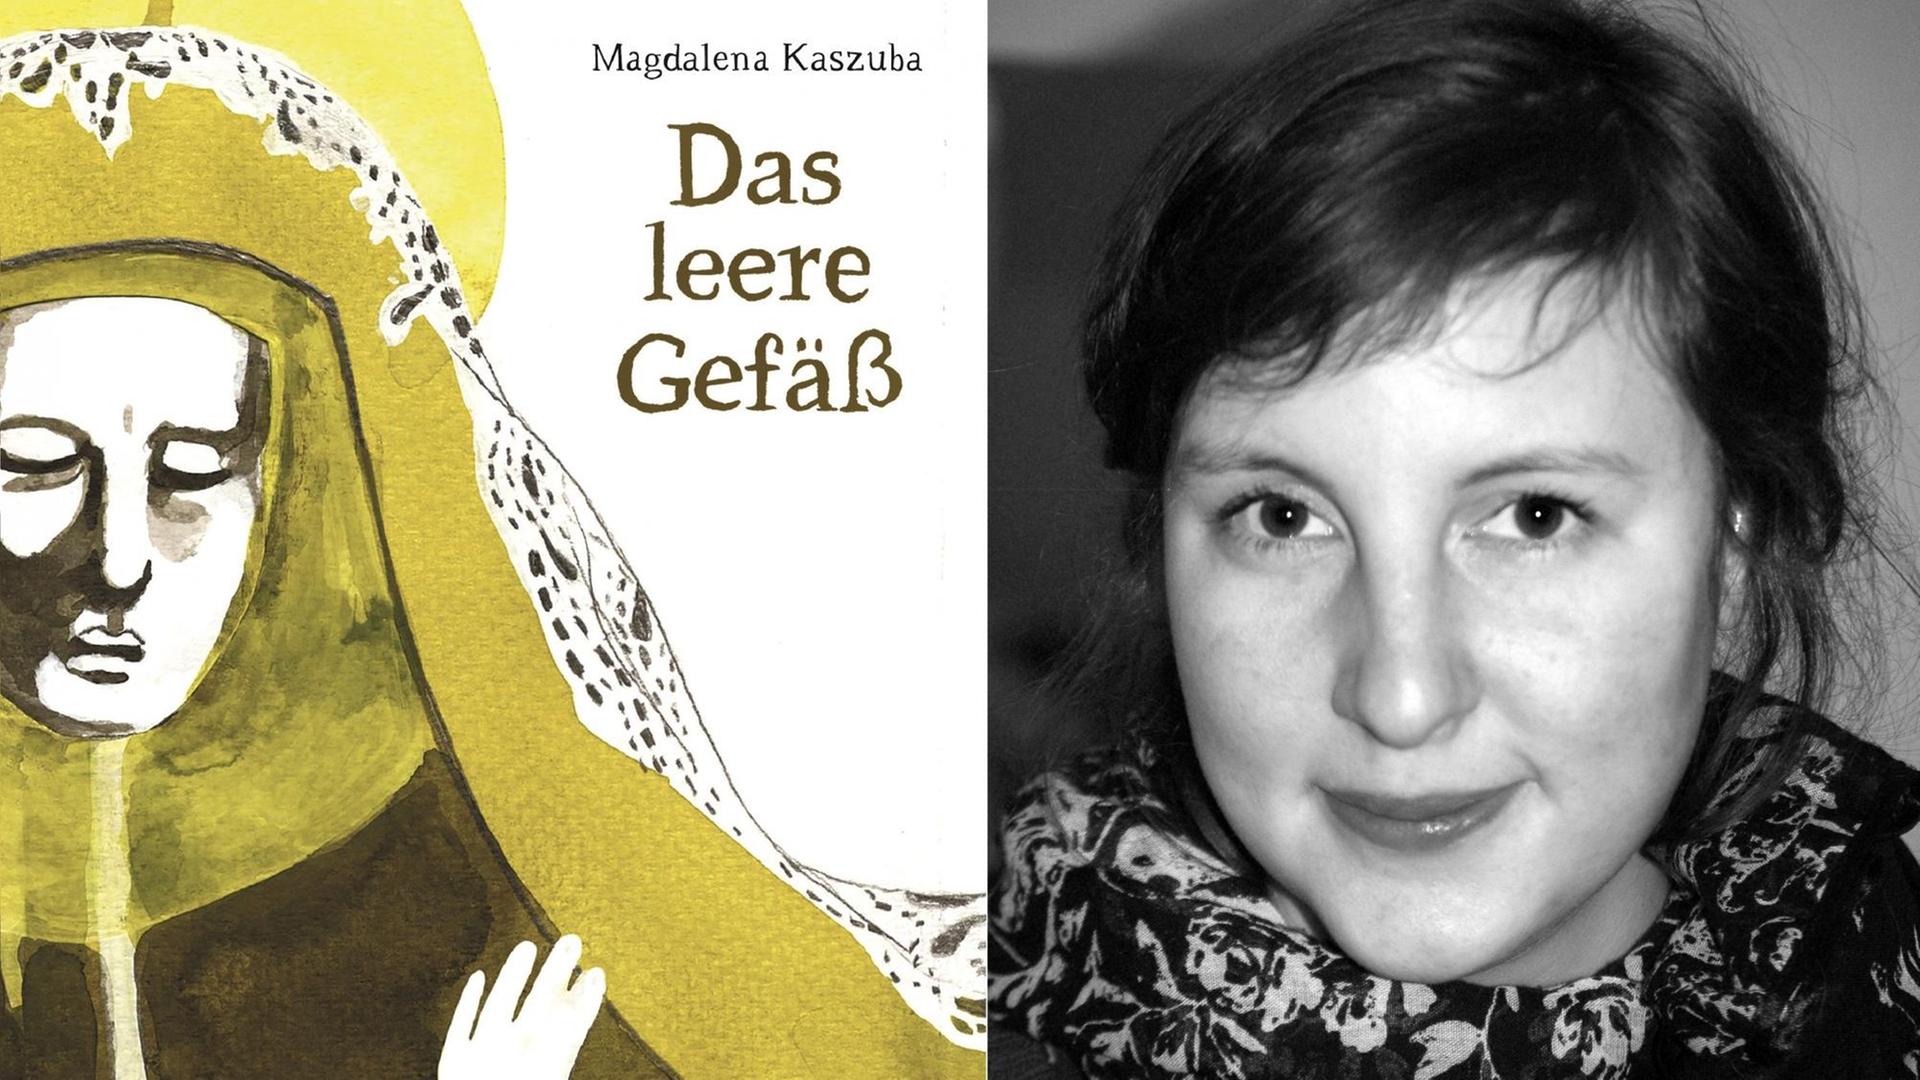 Graphic-Novel-Autorin Magdalena Kaszuba und ihr neues Buch "Das leere Gefäß"